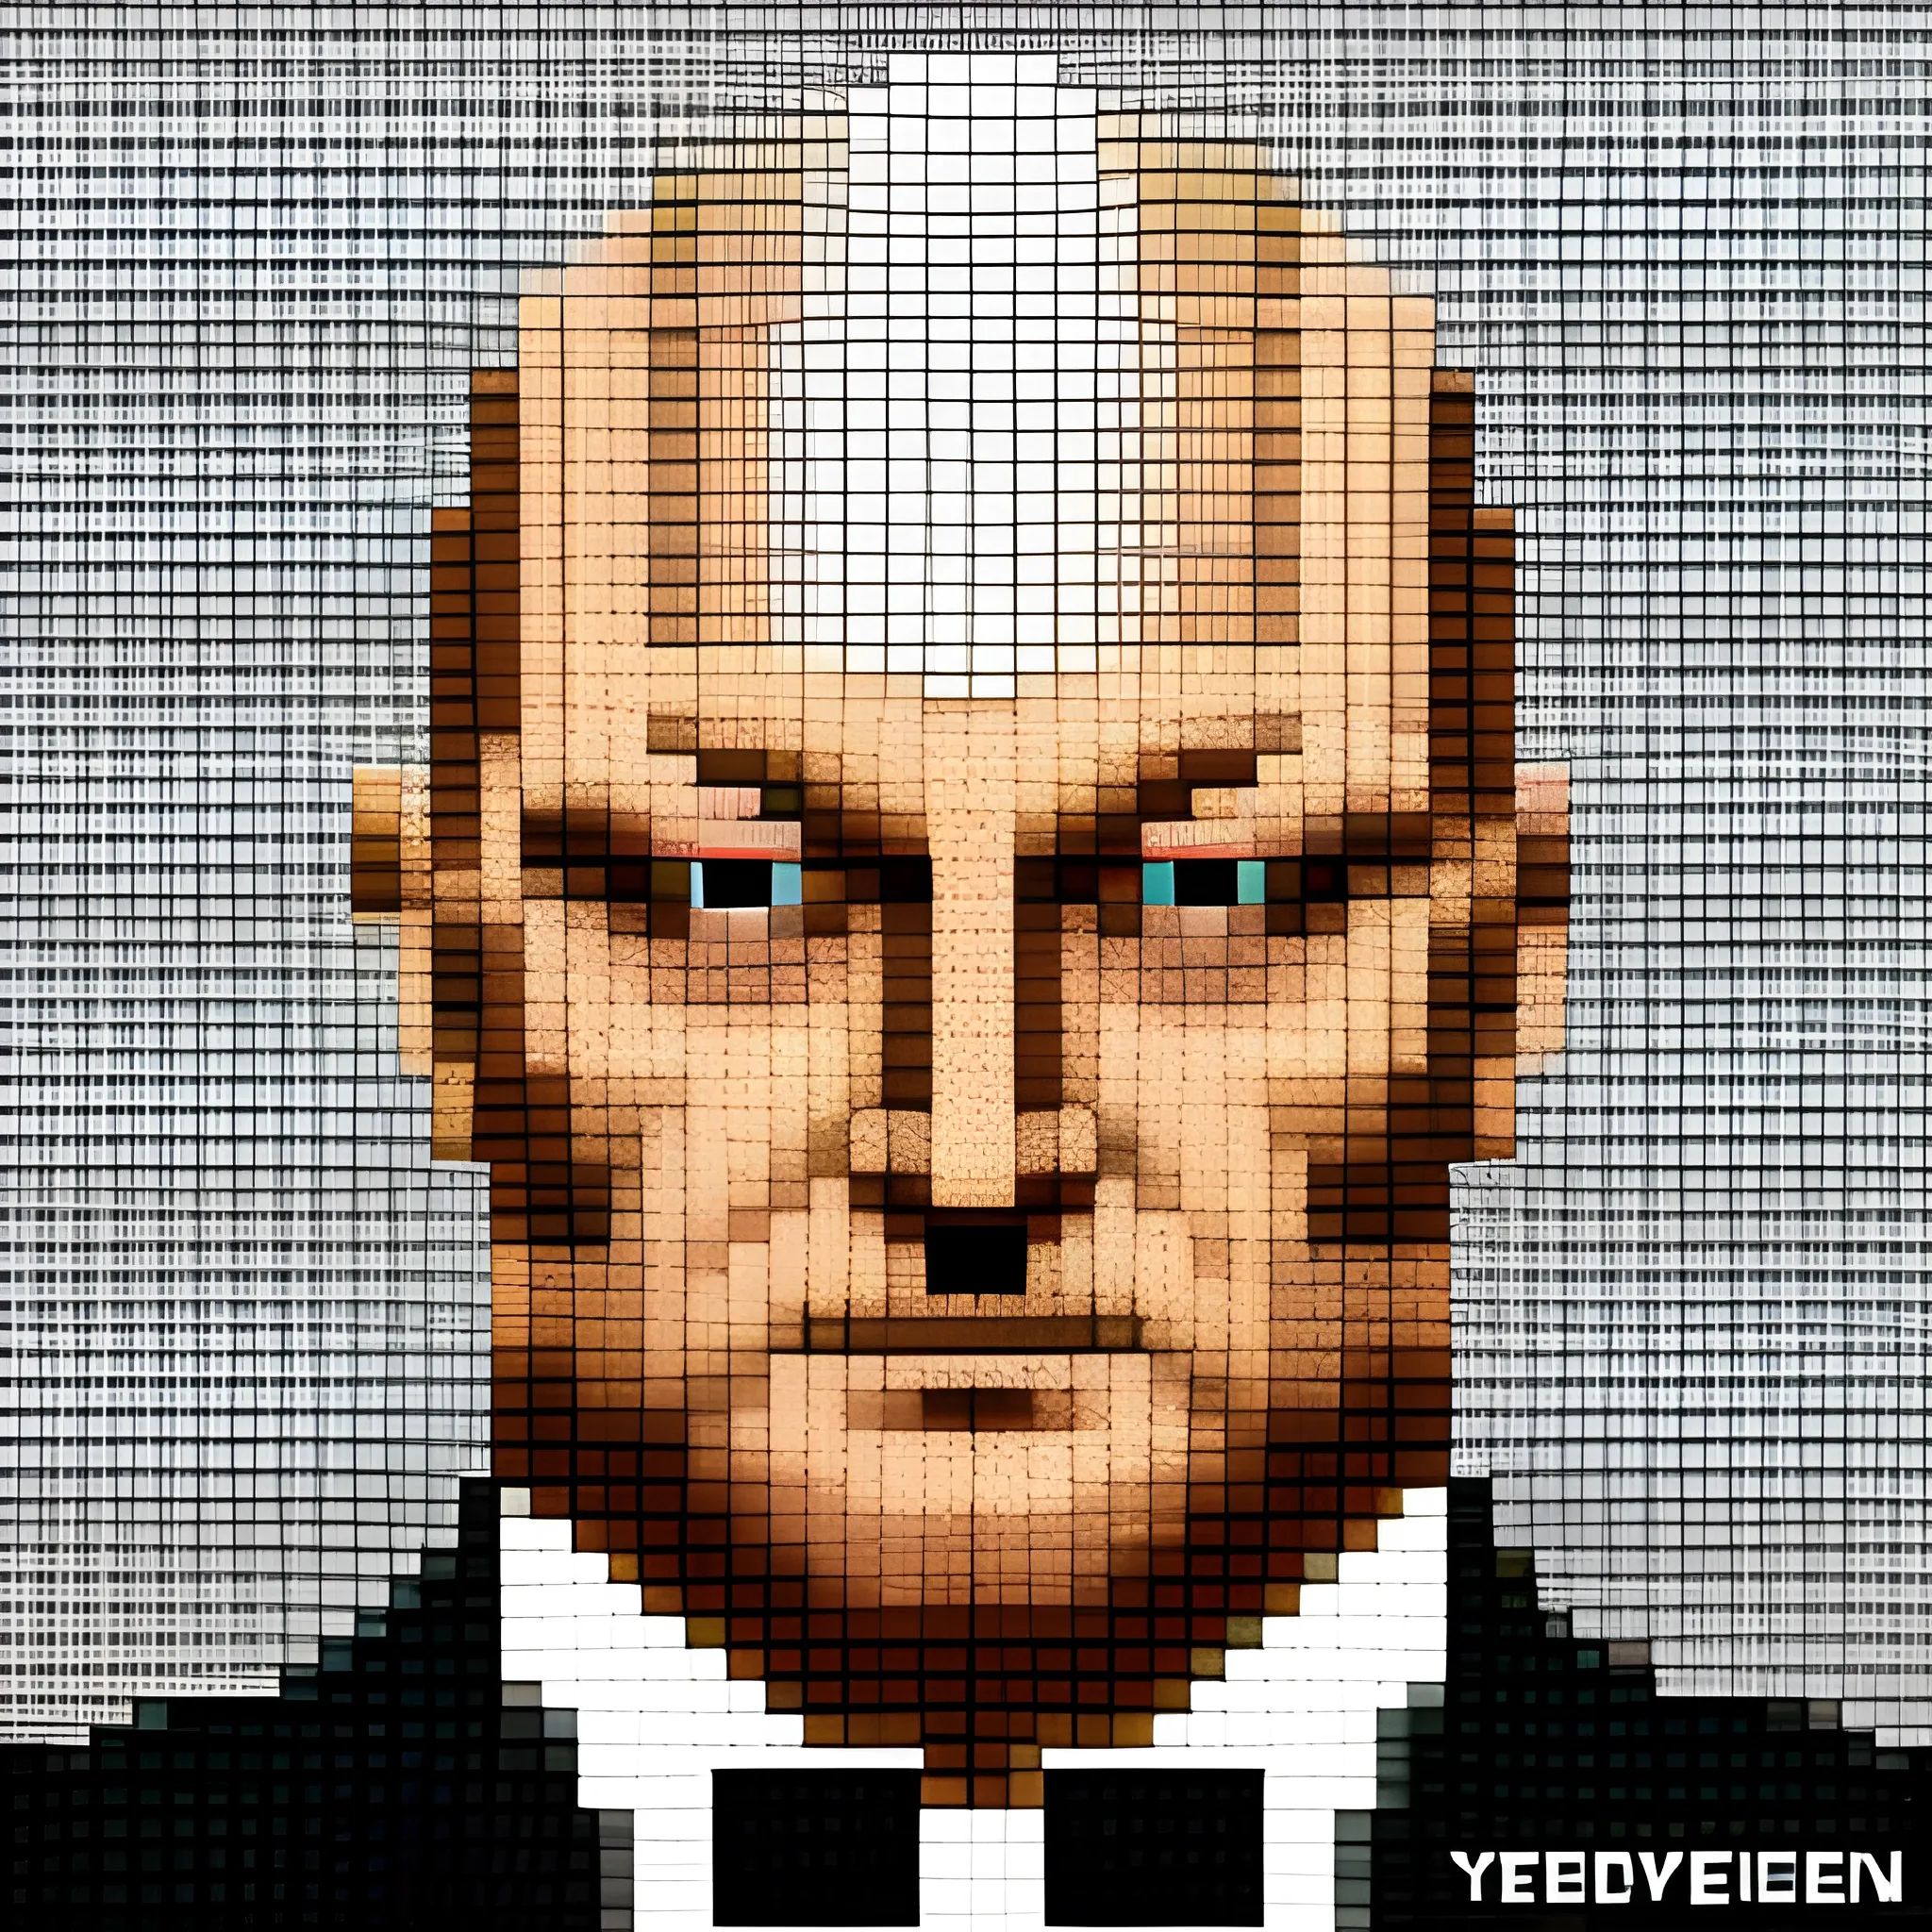 Yevgeny Prigozhin Bond Villain Pixel Art